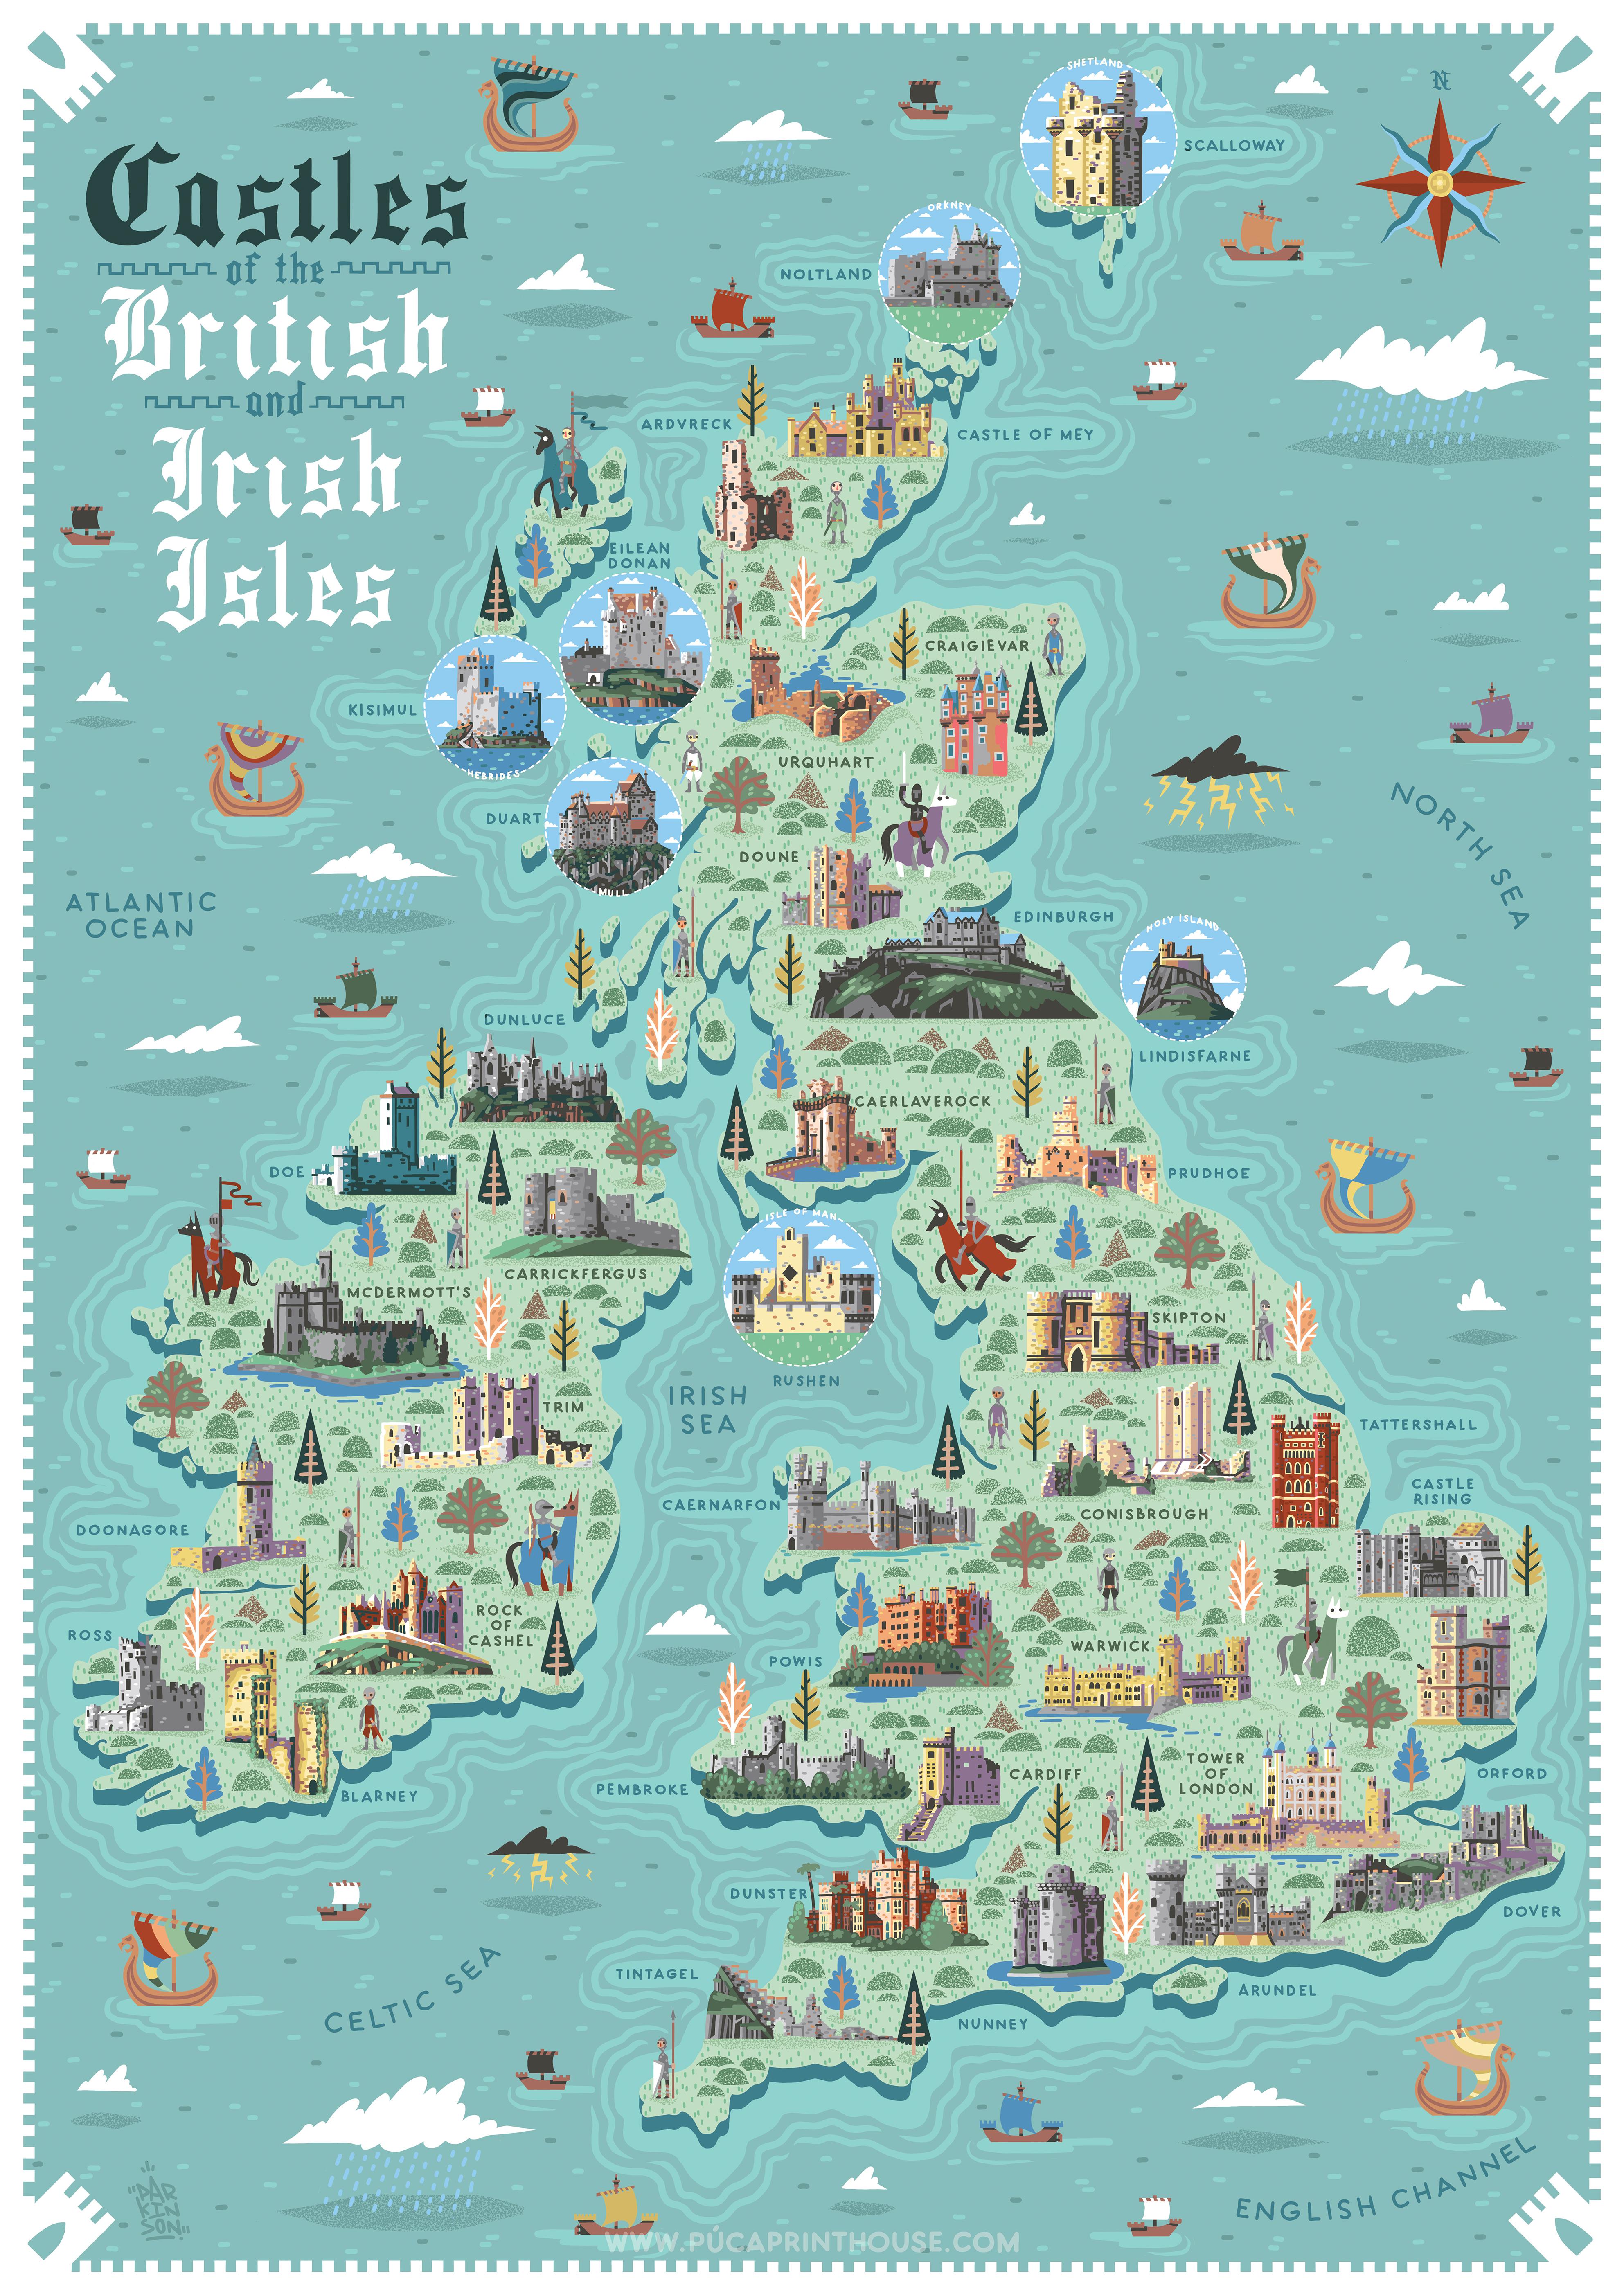 ___Castles of the British and Irish Isles.jpg